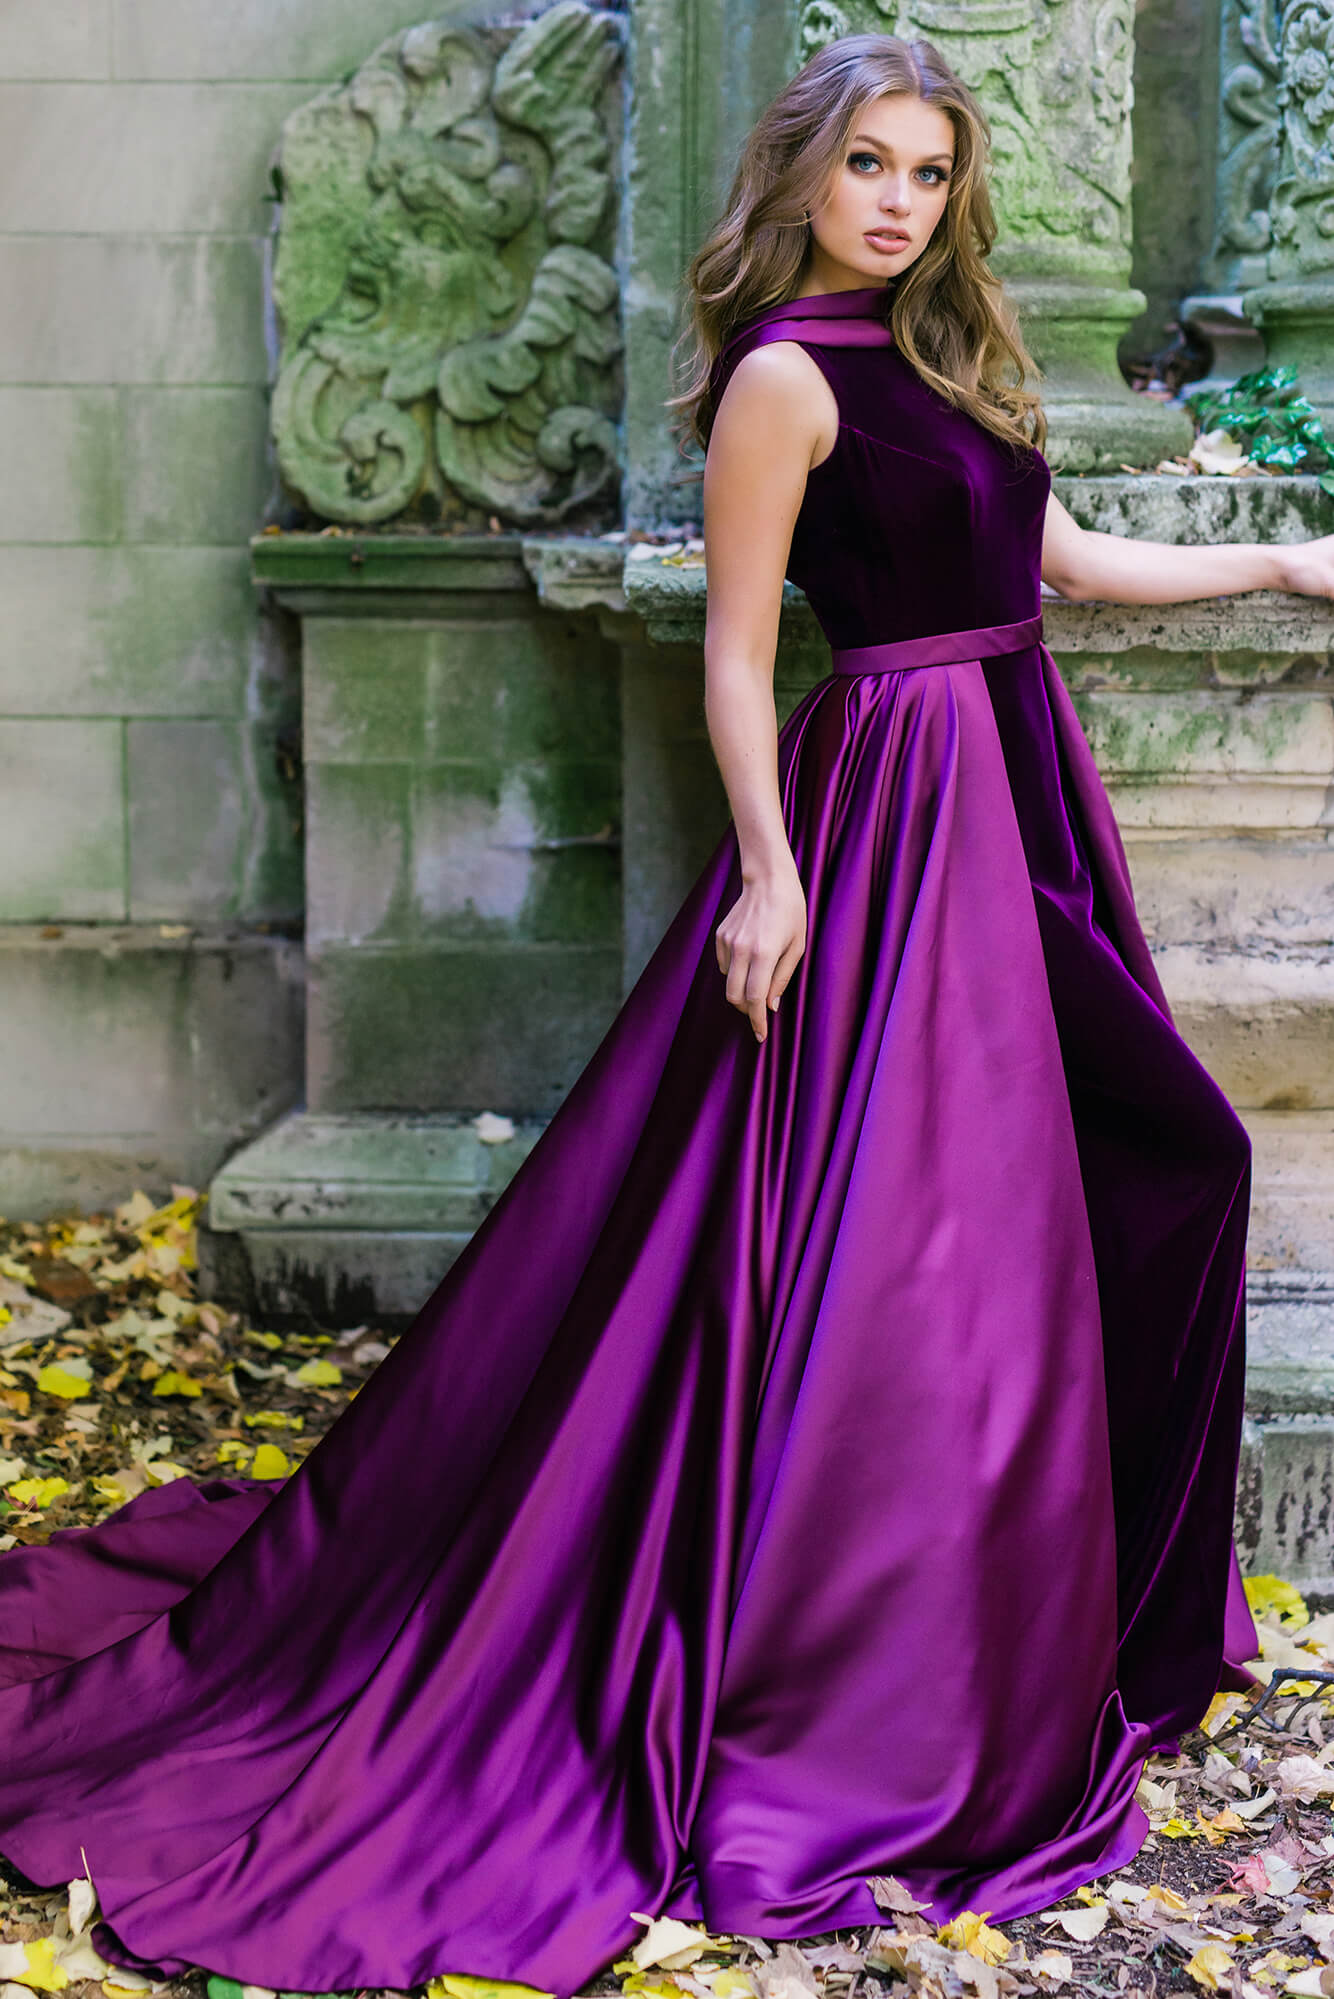 velvet and satin gown